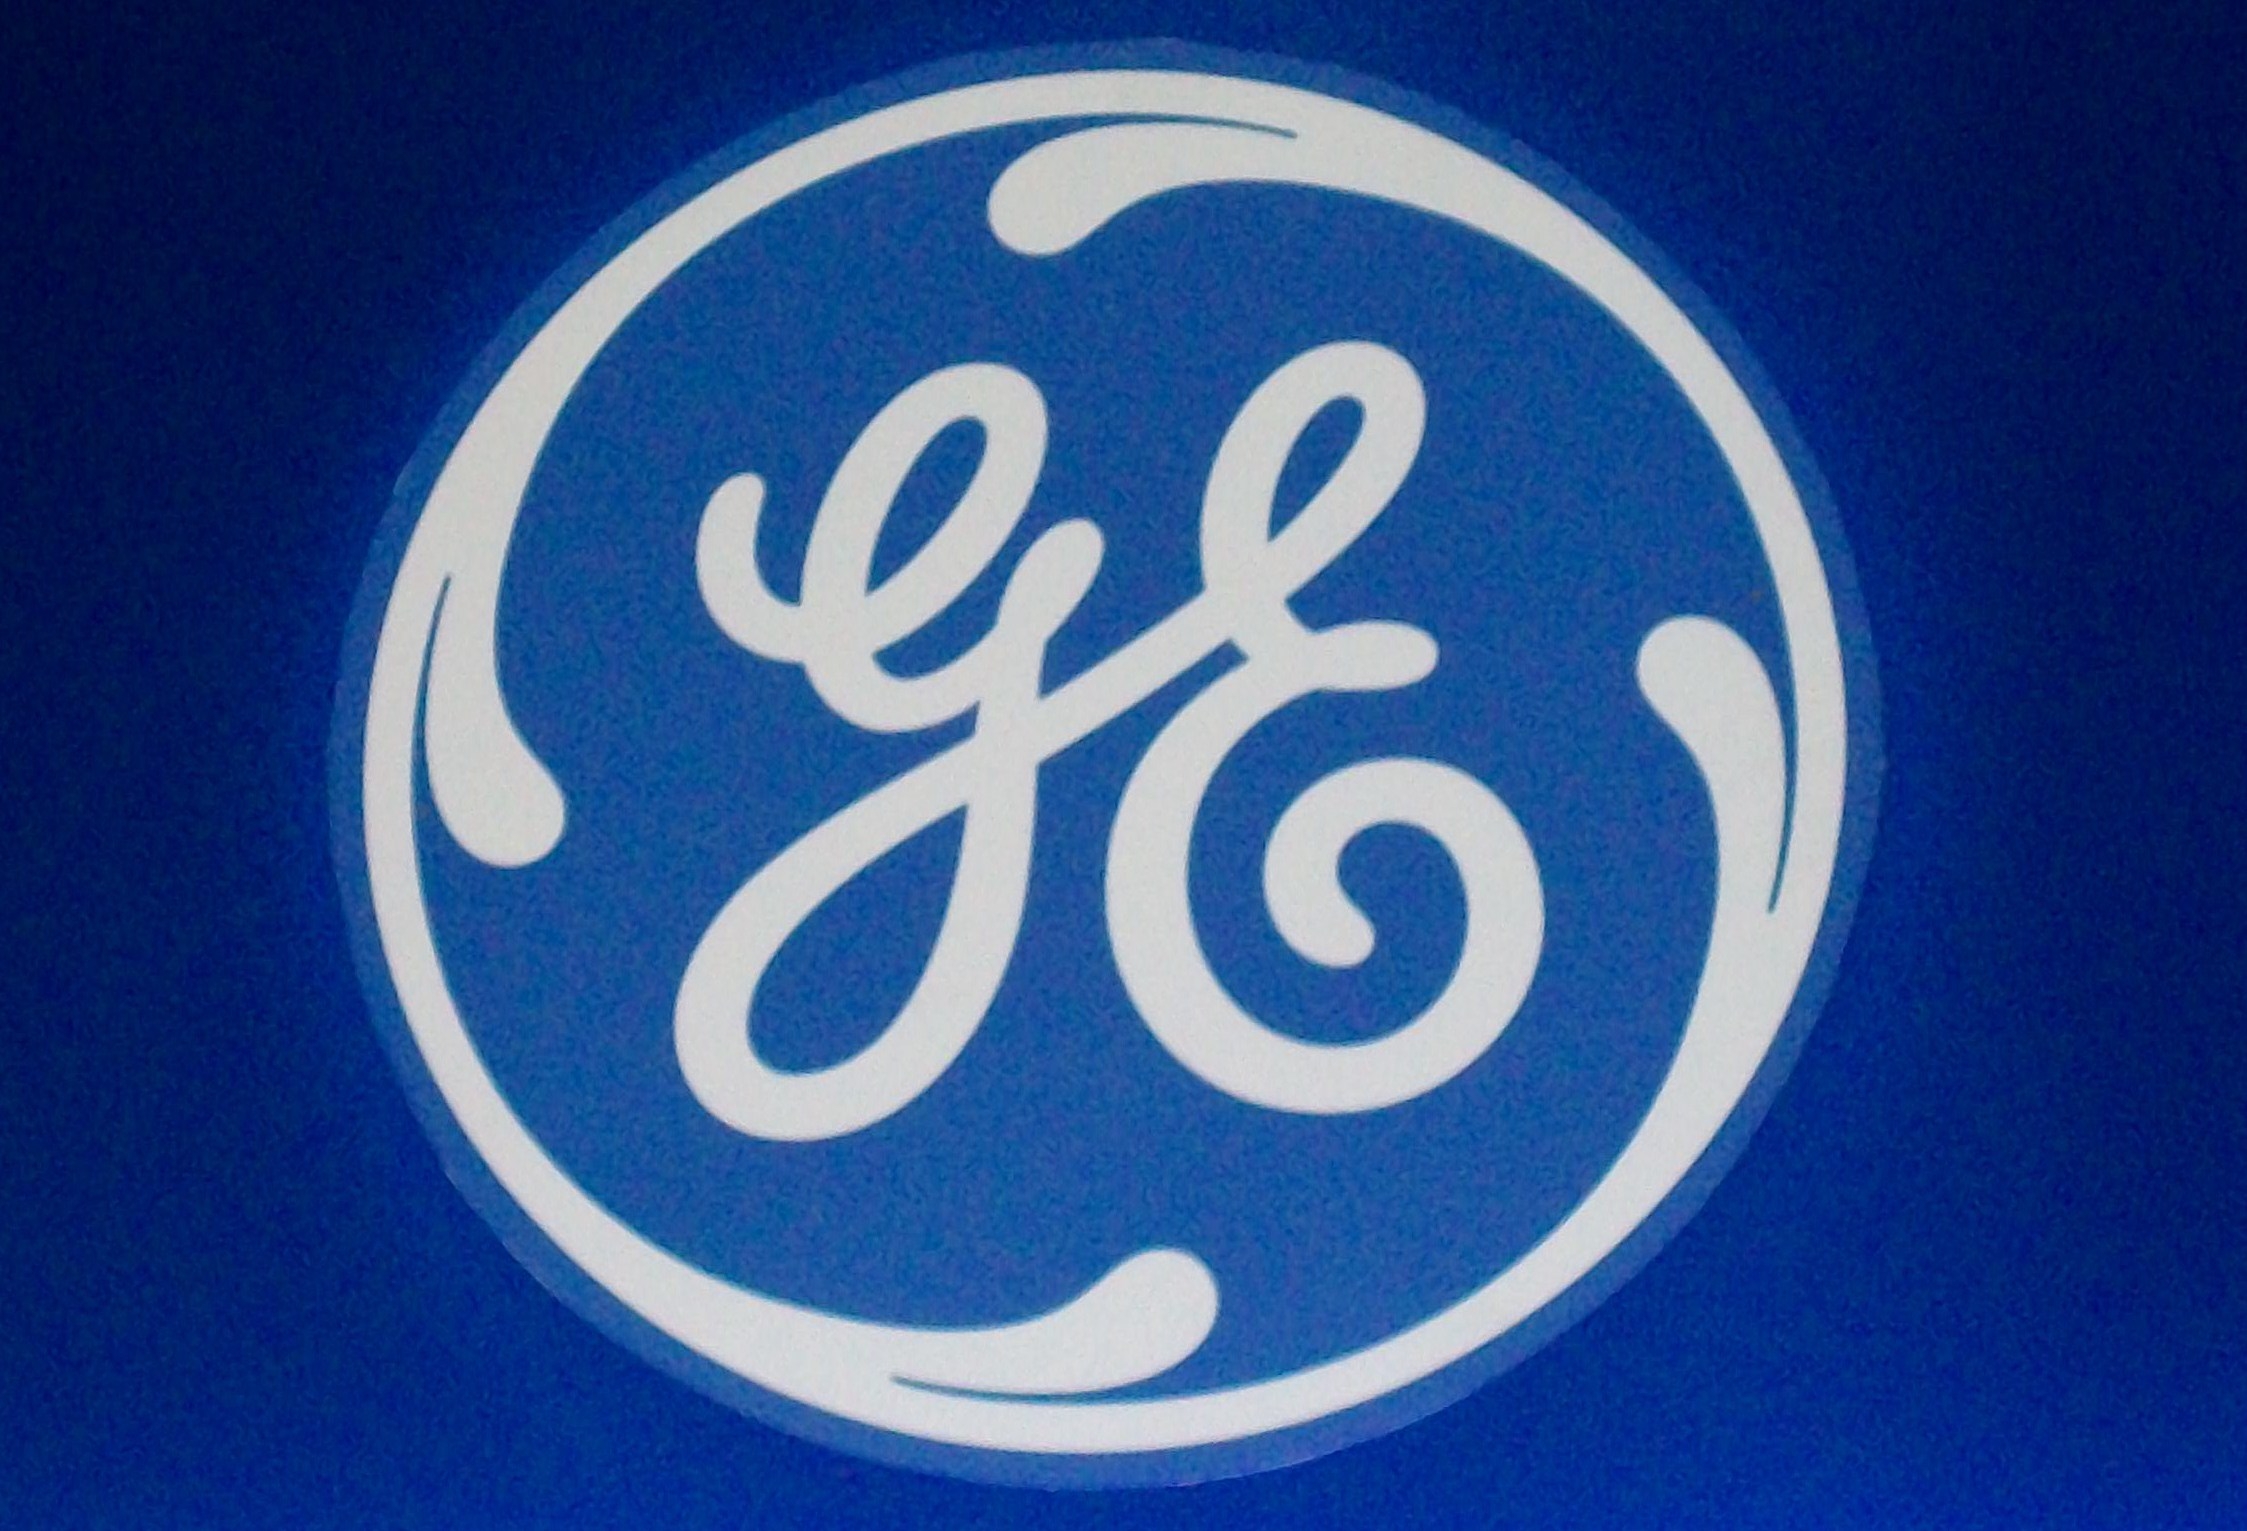 A General Electric történetének legnagyobb ipari akvizícióját zárta